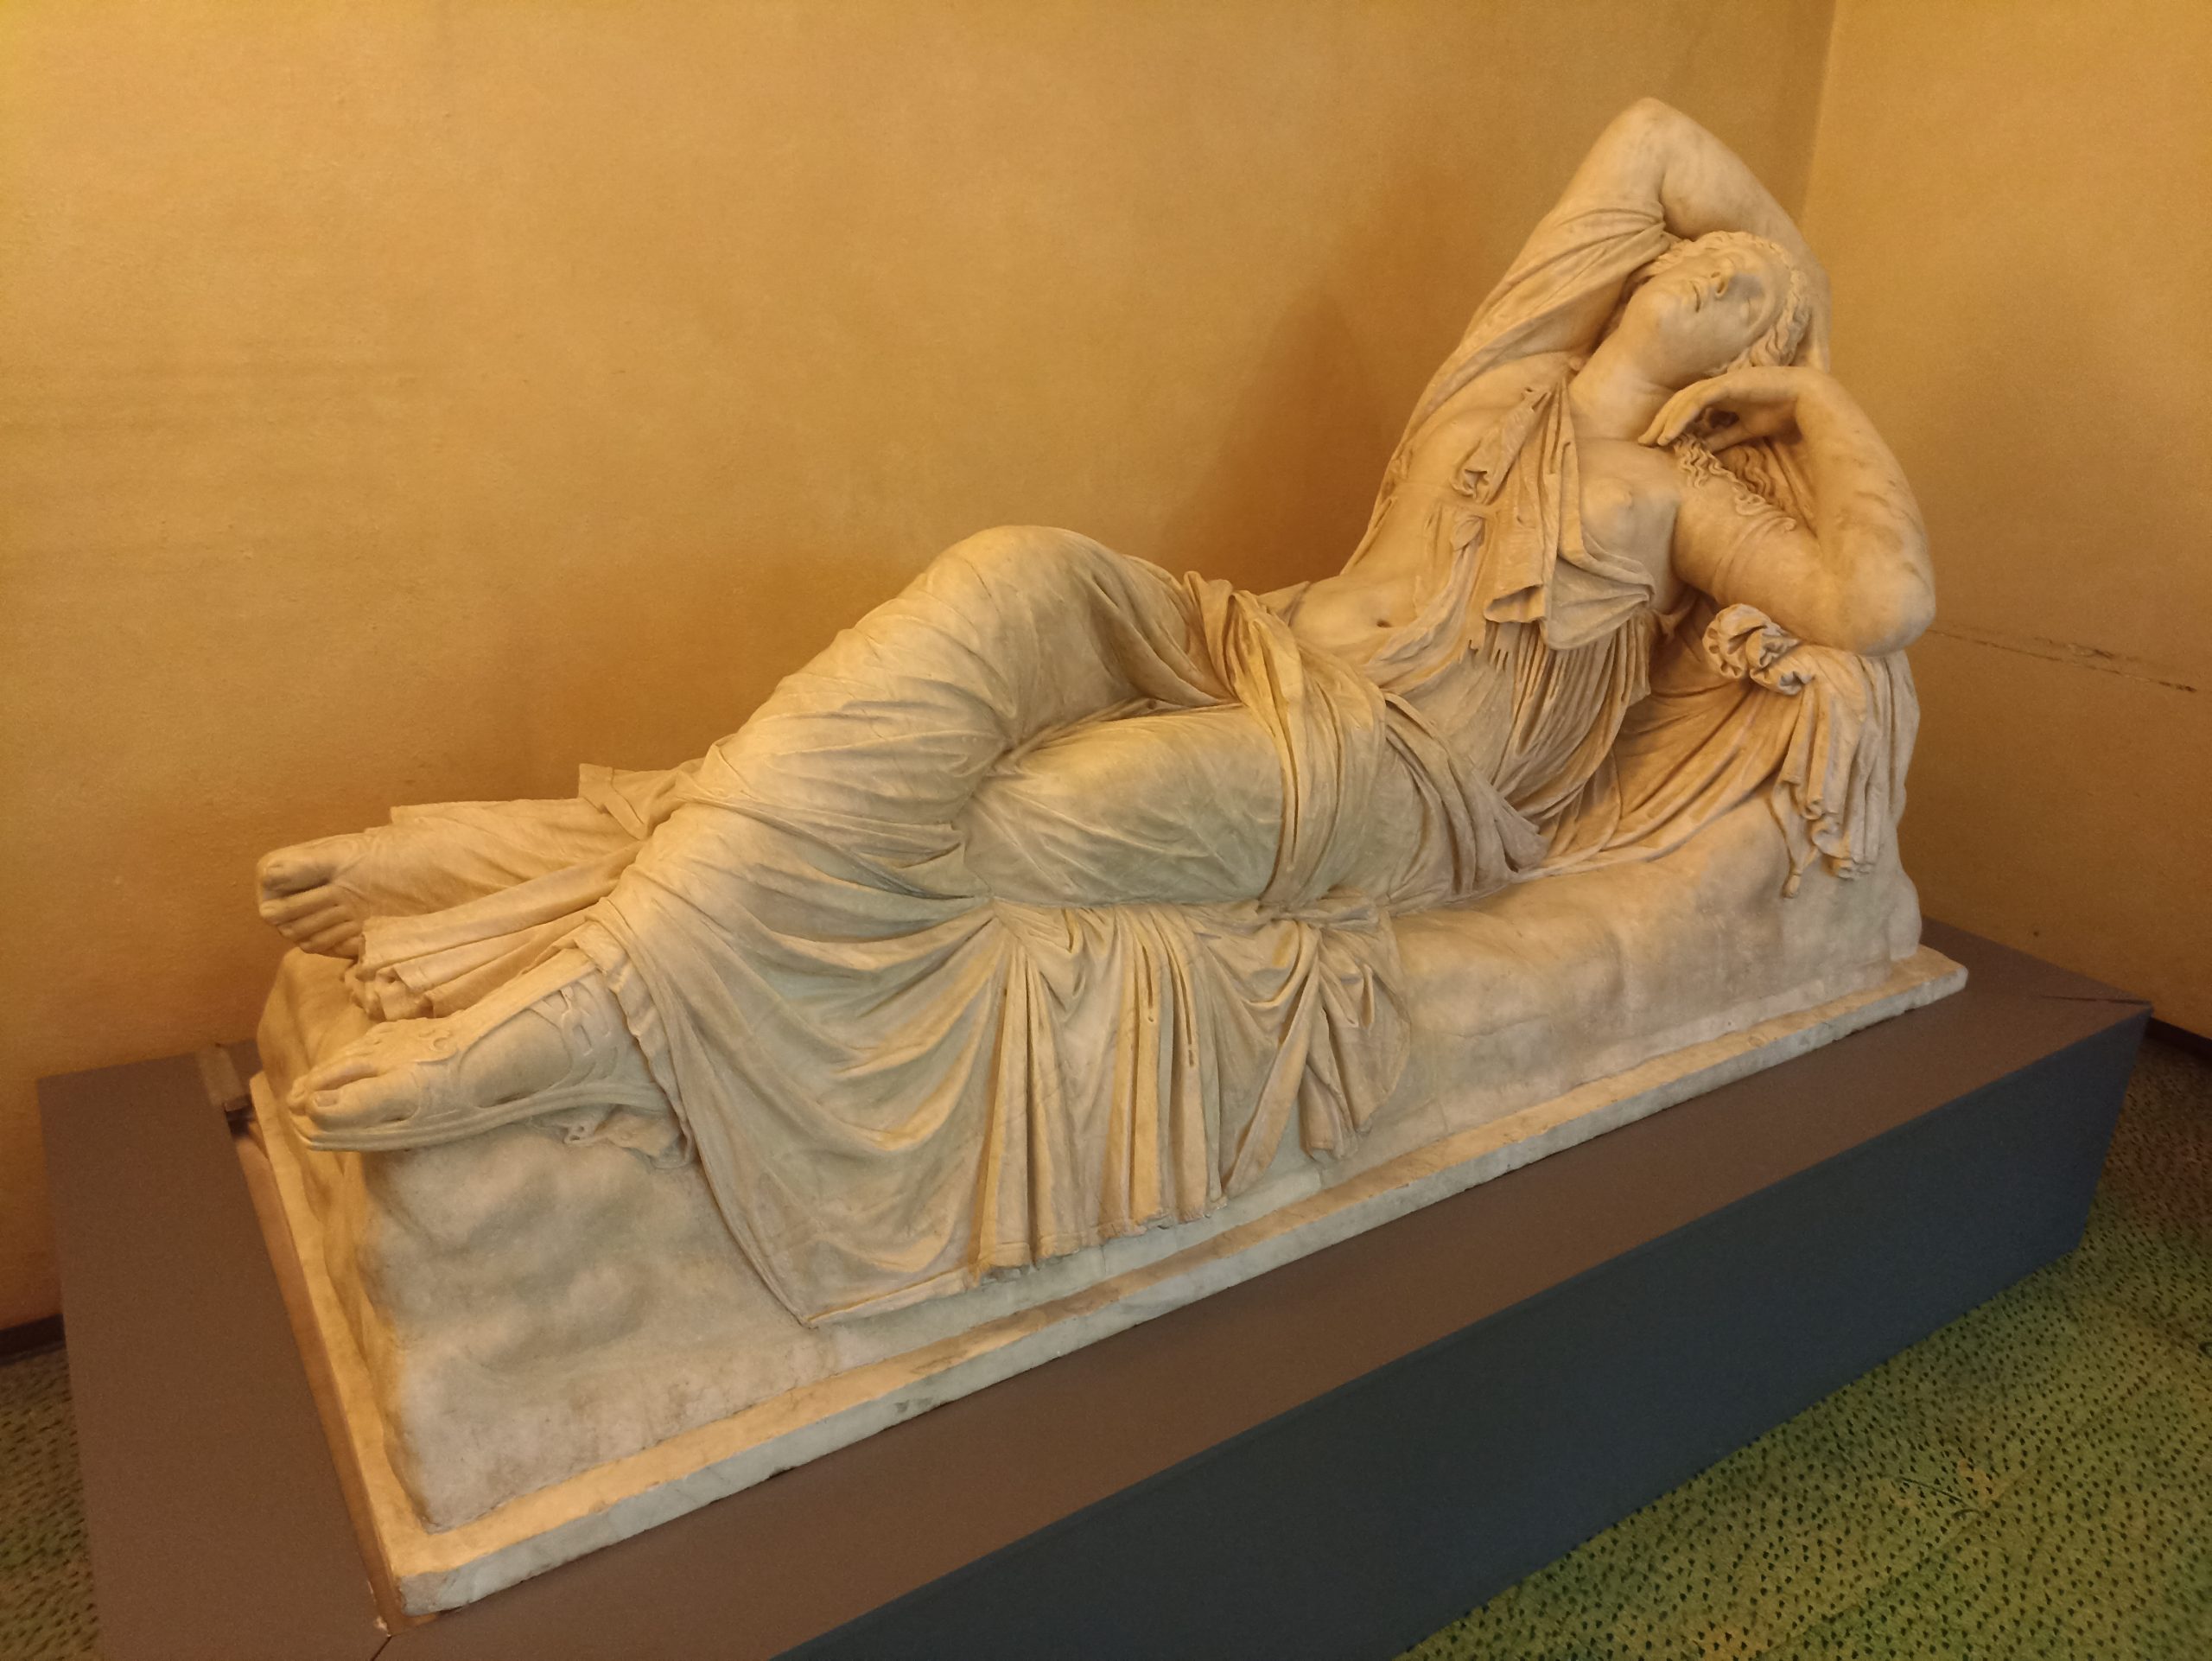 Al via i lavori per il “nuovo” Museo Archeologico Nazionale di Firenze che verrà completamente rinnovato senza mai chiudere interamente al pubblico